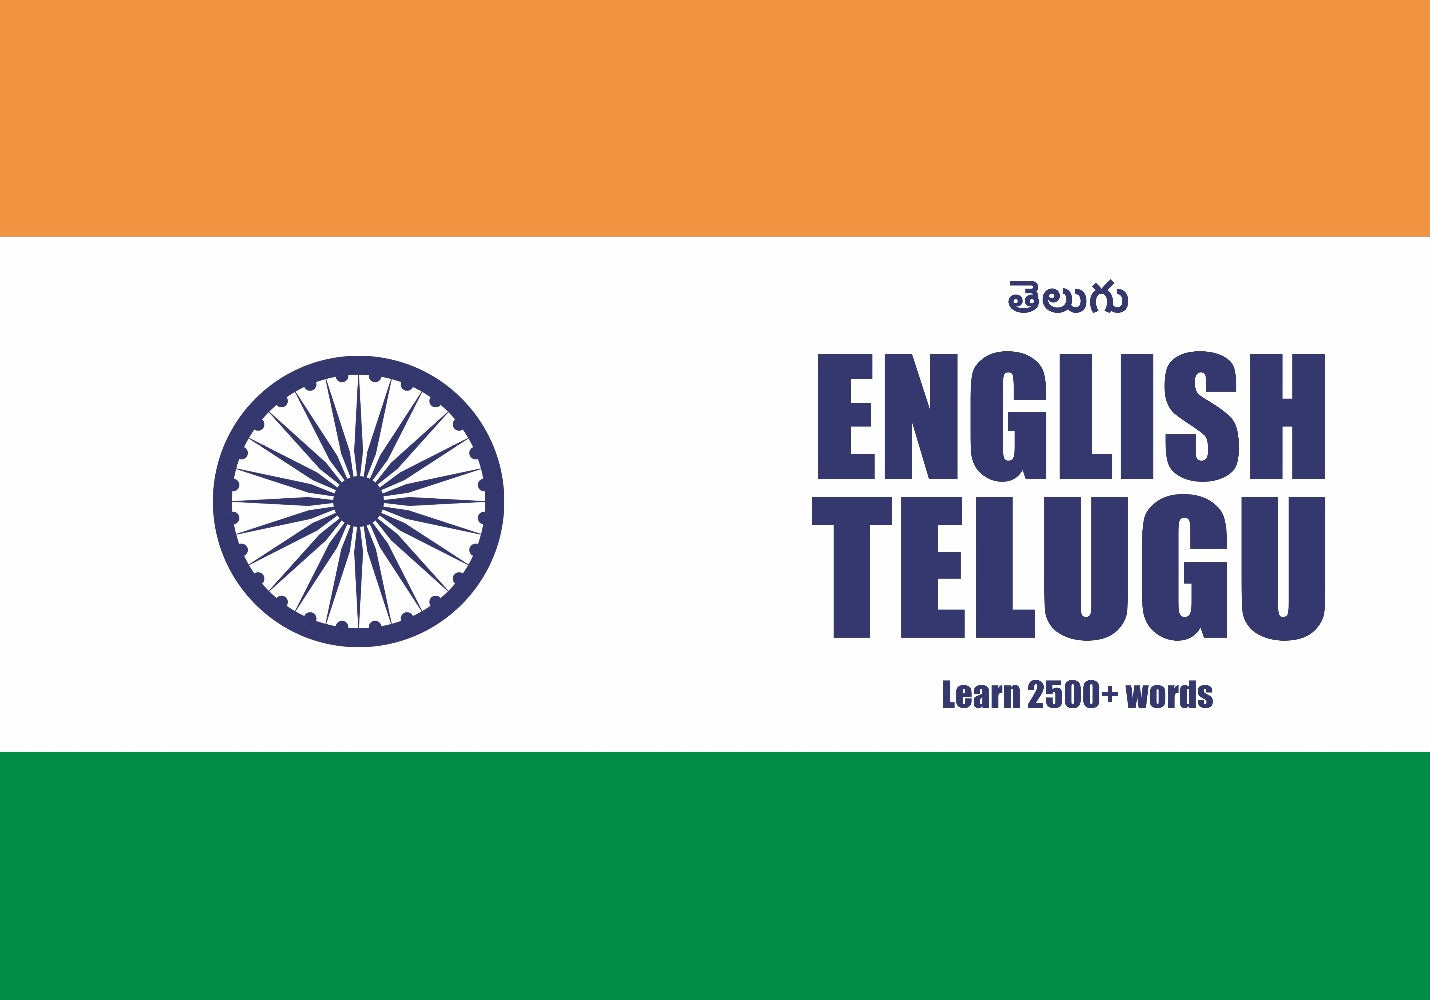 Telugu language learning notebook cover